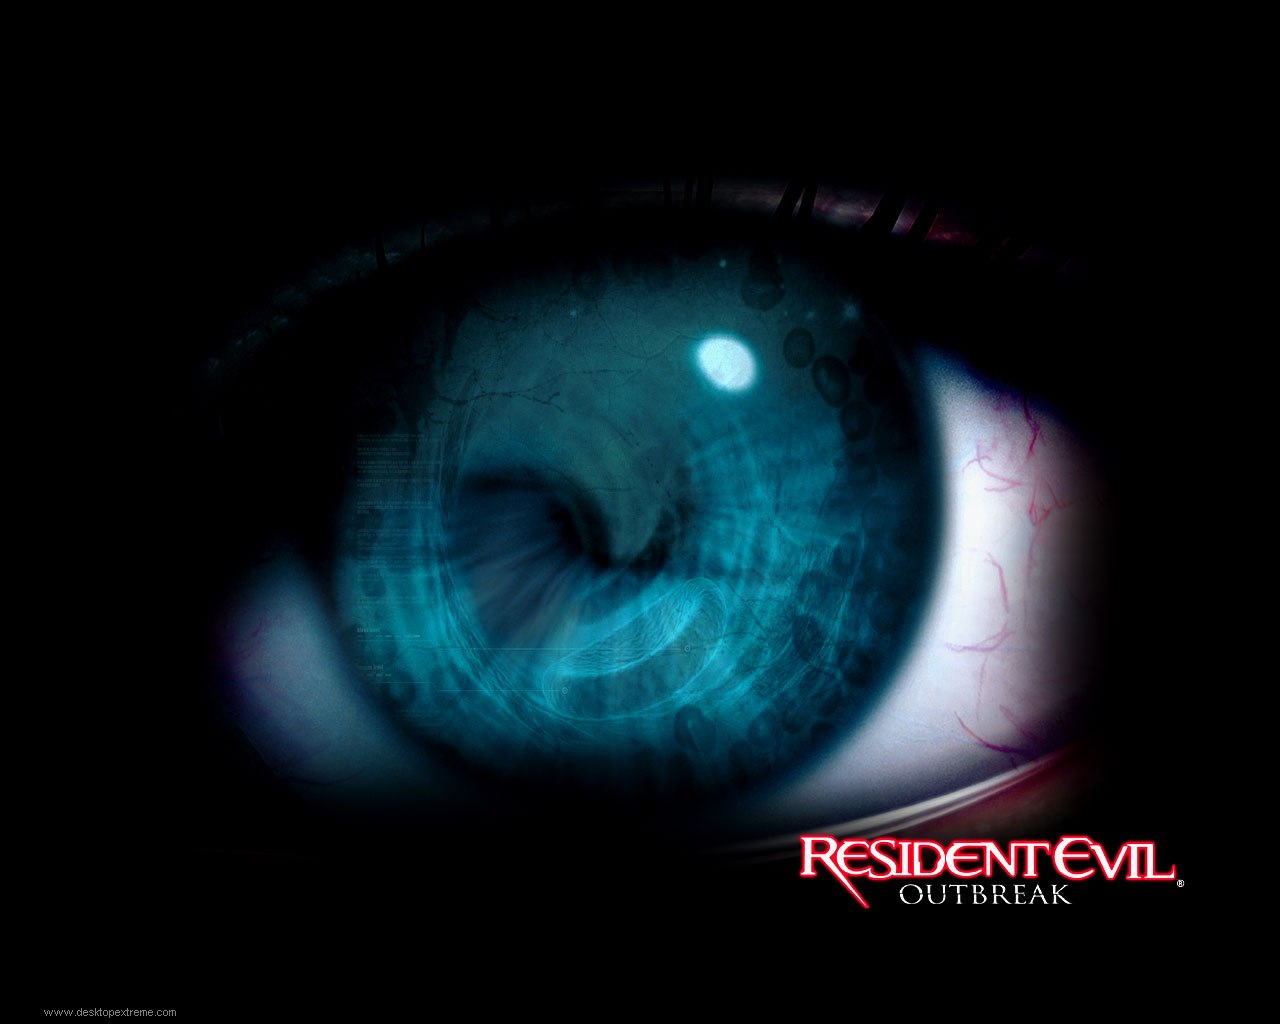 Resident Evil Outbreak Art